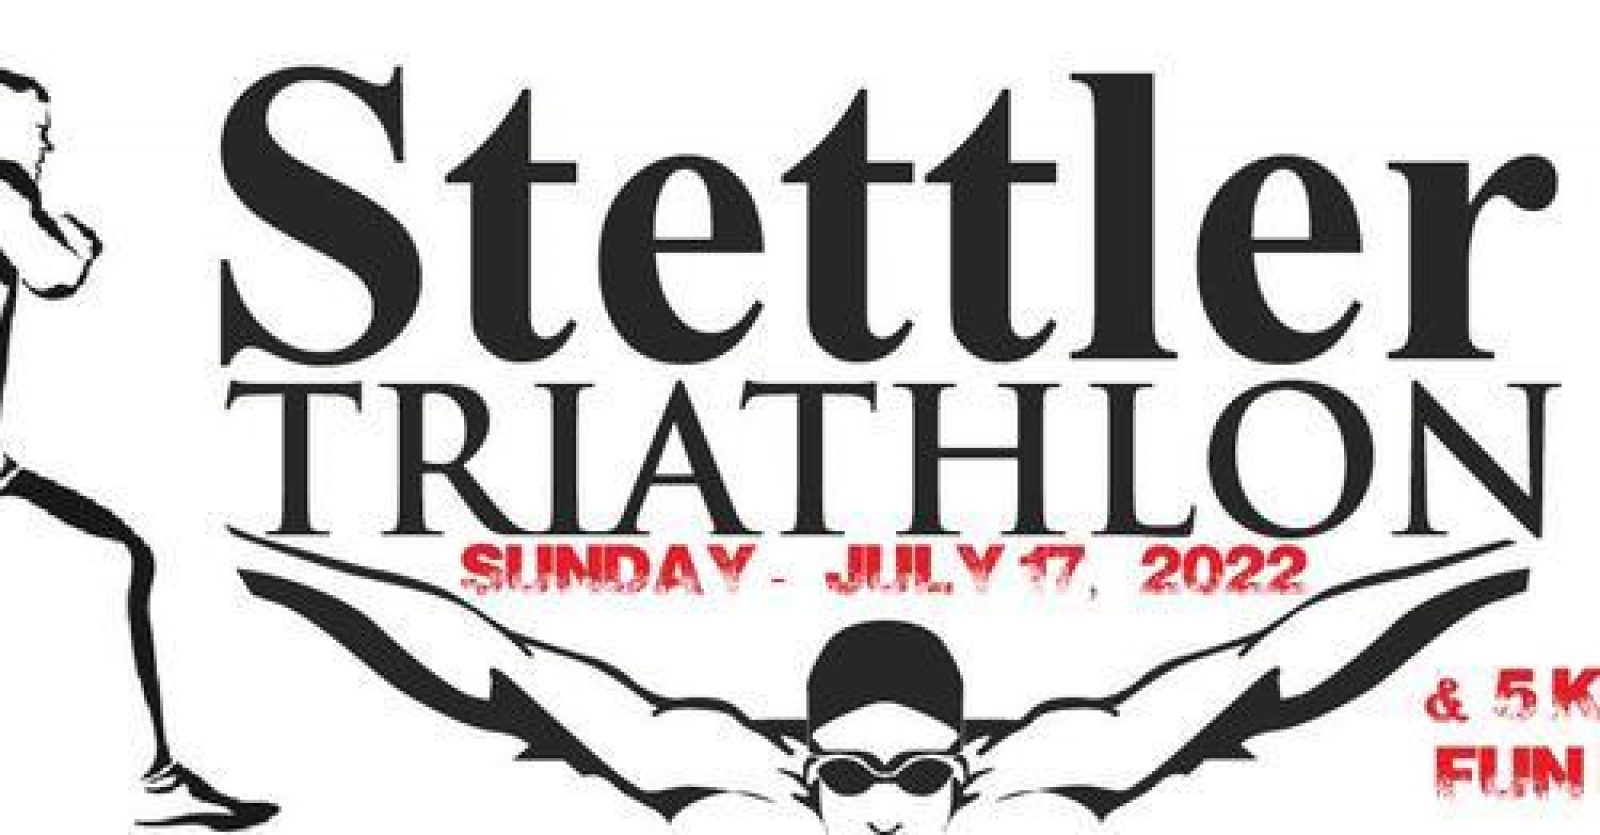 Stettler triathlon